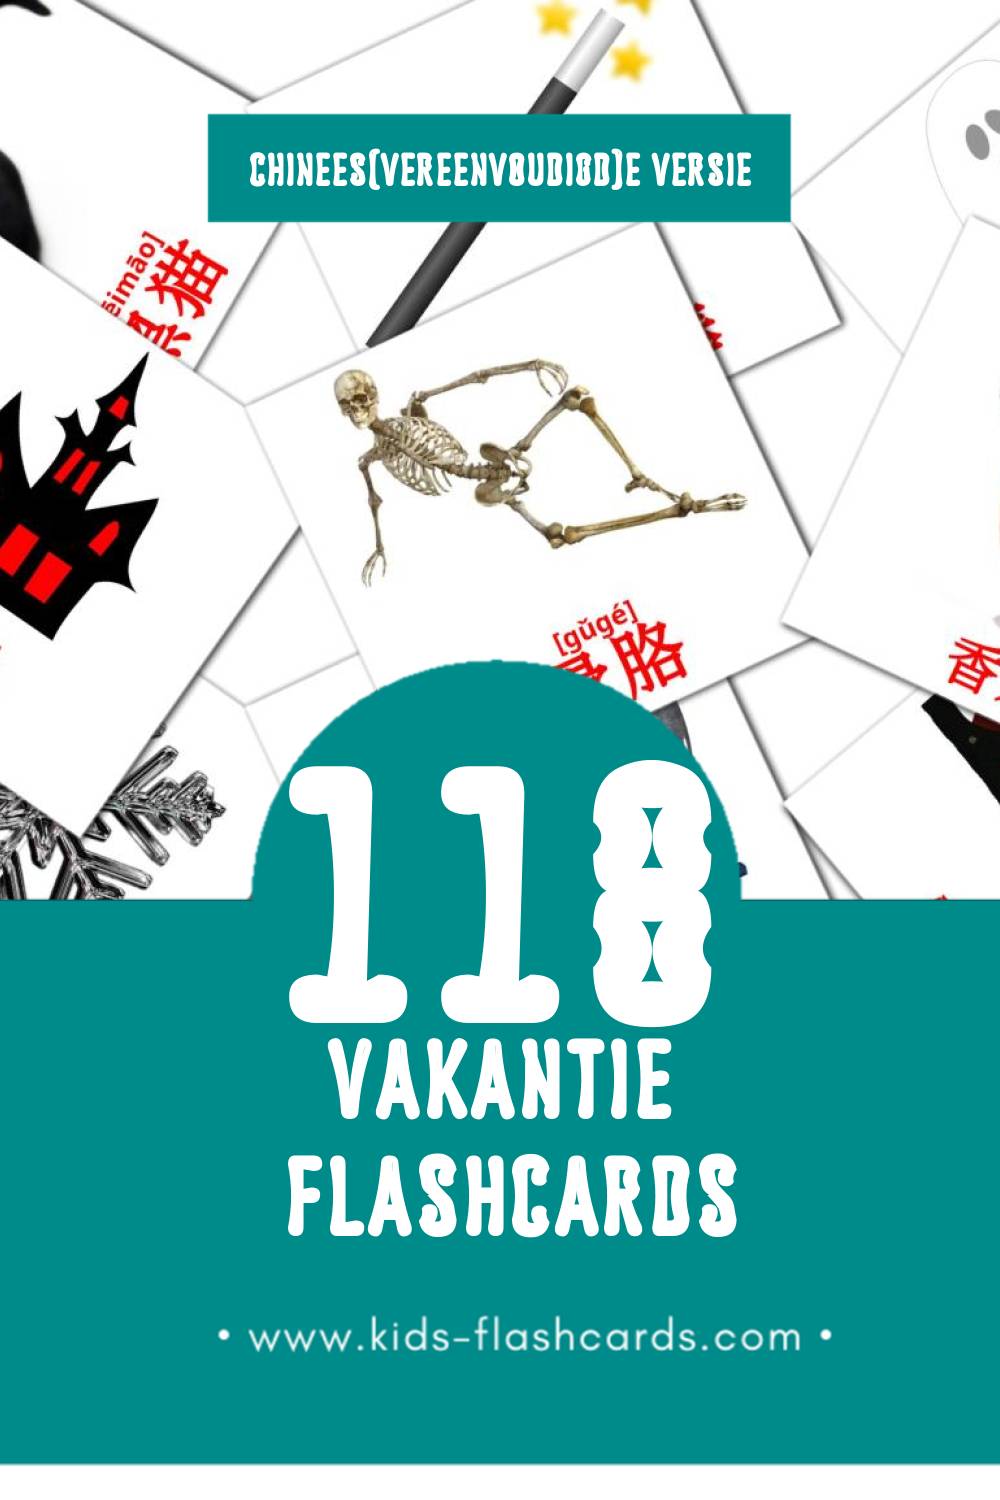 Visuele 节日 Flashcards voor Kleuters (118 kaarten in het Chinees(vereenvoudigd))